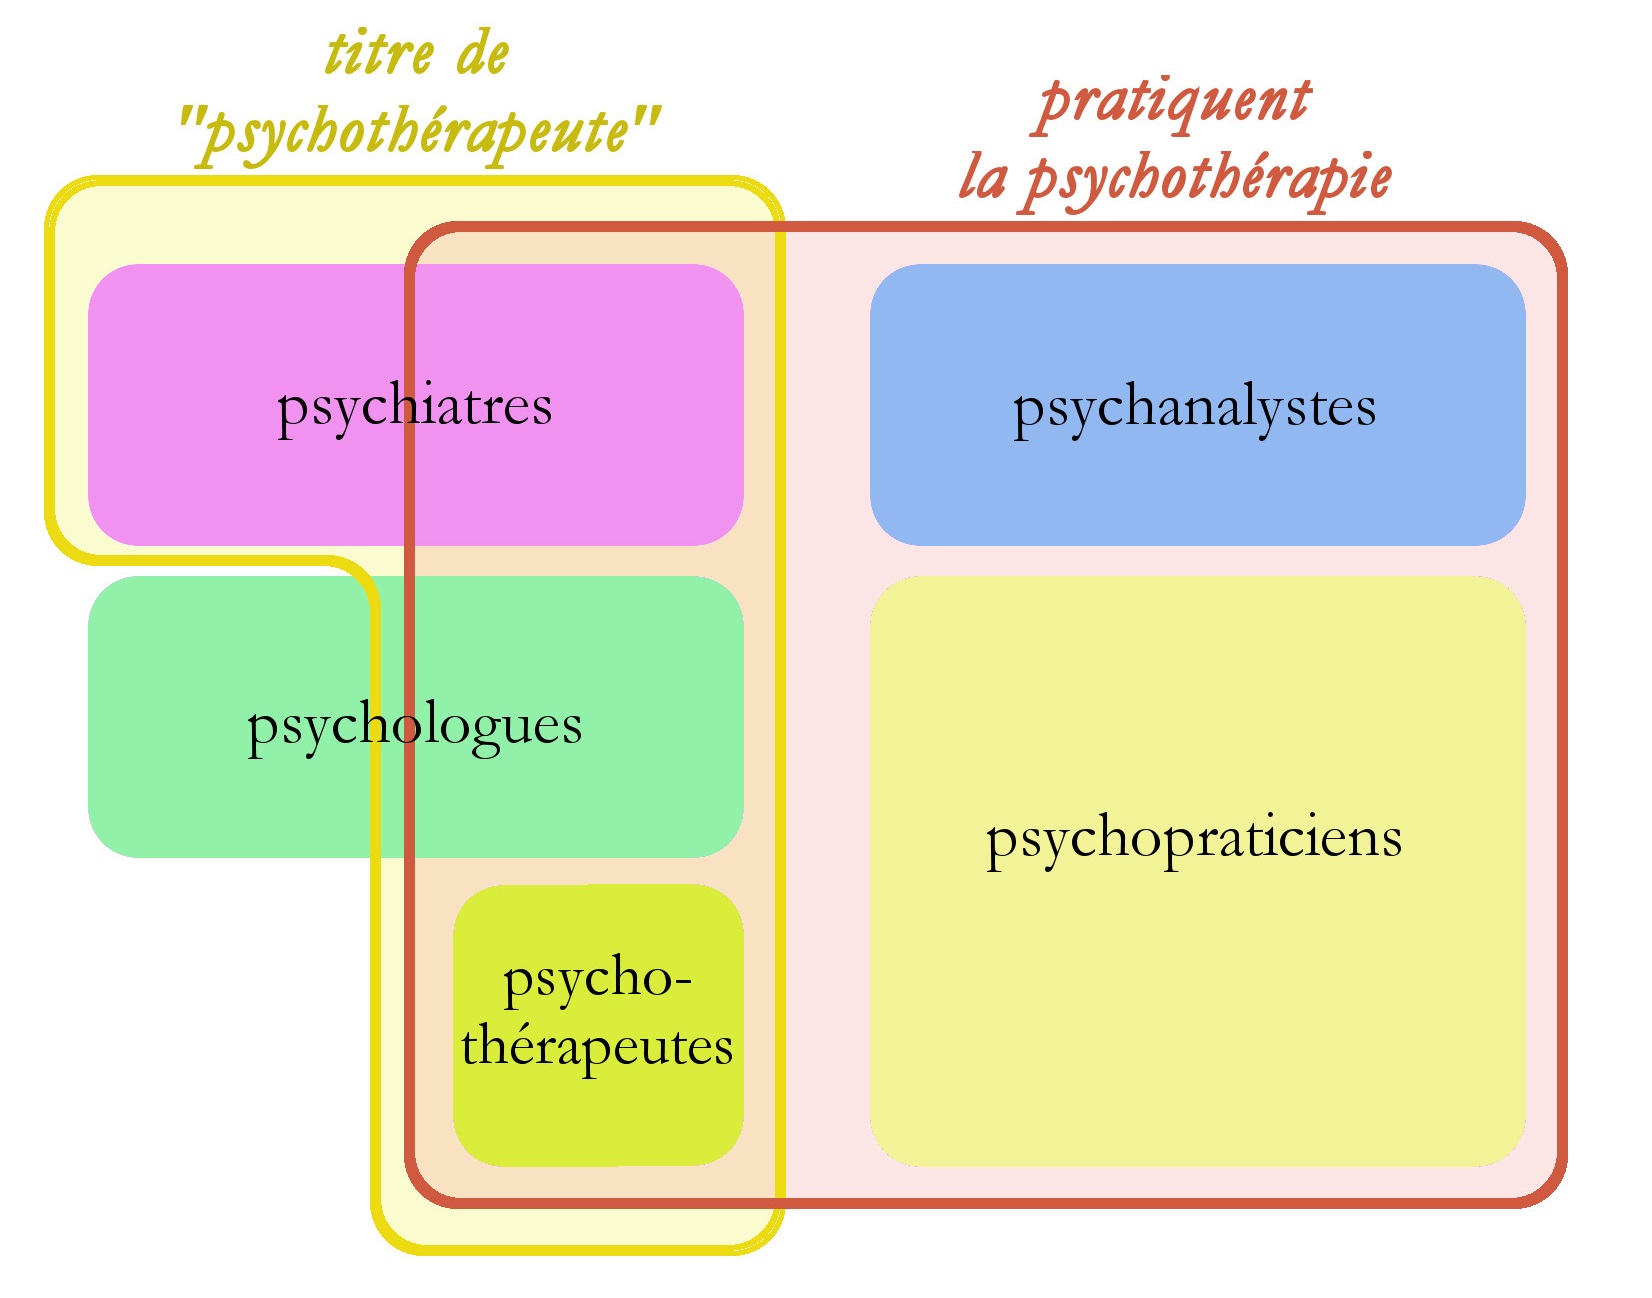 différents psy en france avant 2010 - psychologues, psychiatres, psychothérapeutes, psychanalystes